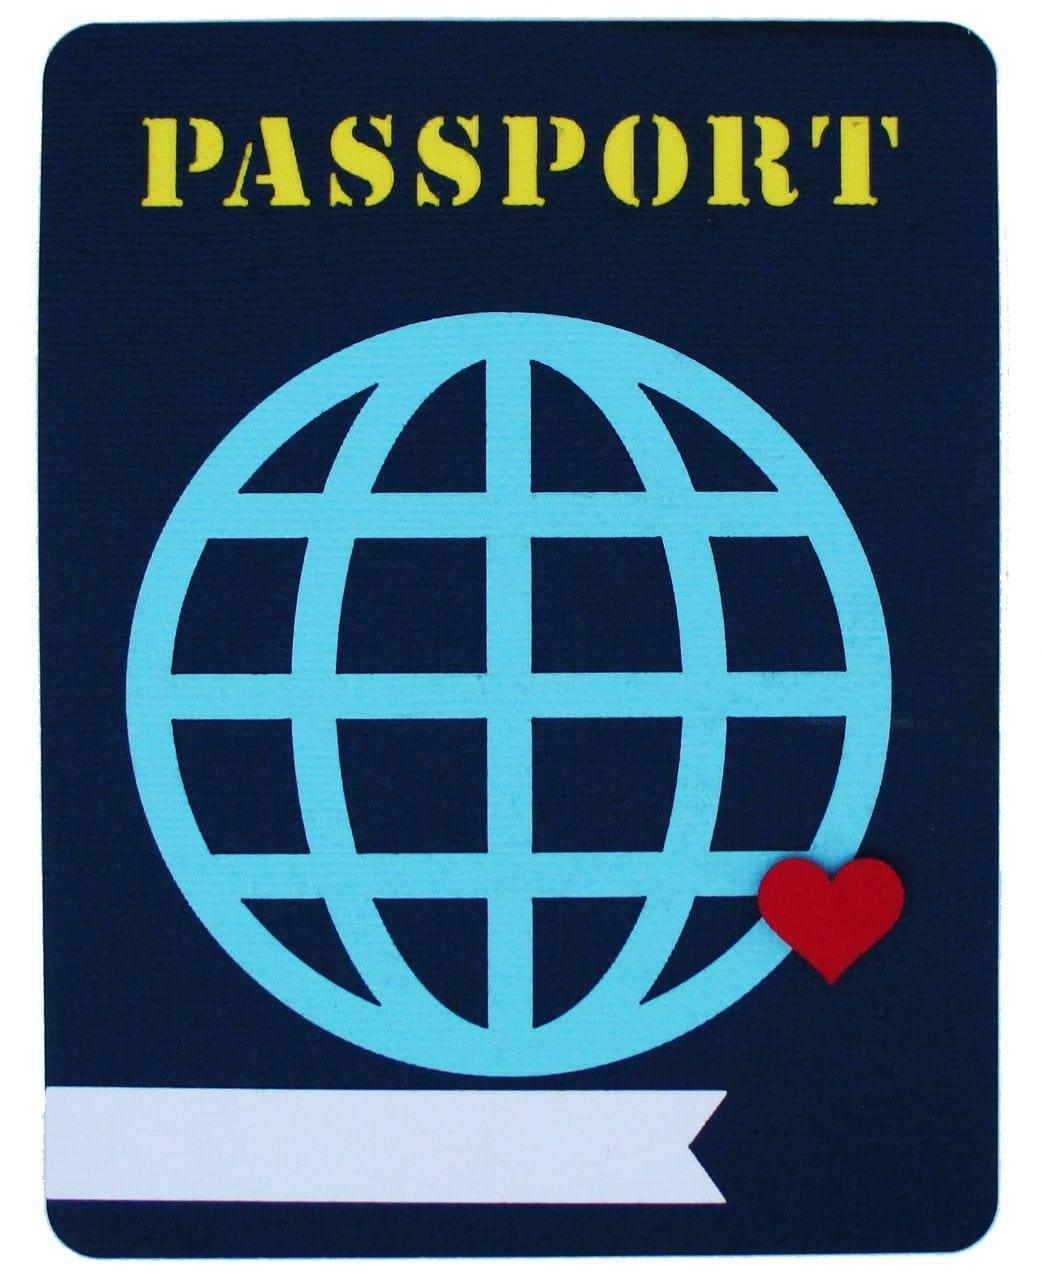 Passport 4 x 5 Fully-Assembled Laser Cut Scrapbook Embellishment by SSC Laser Designs